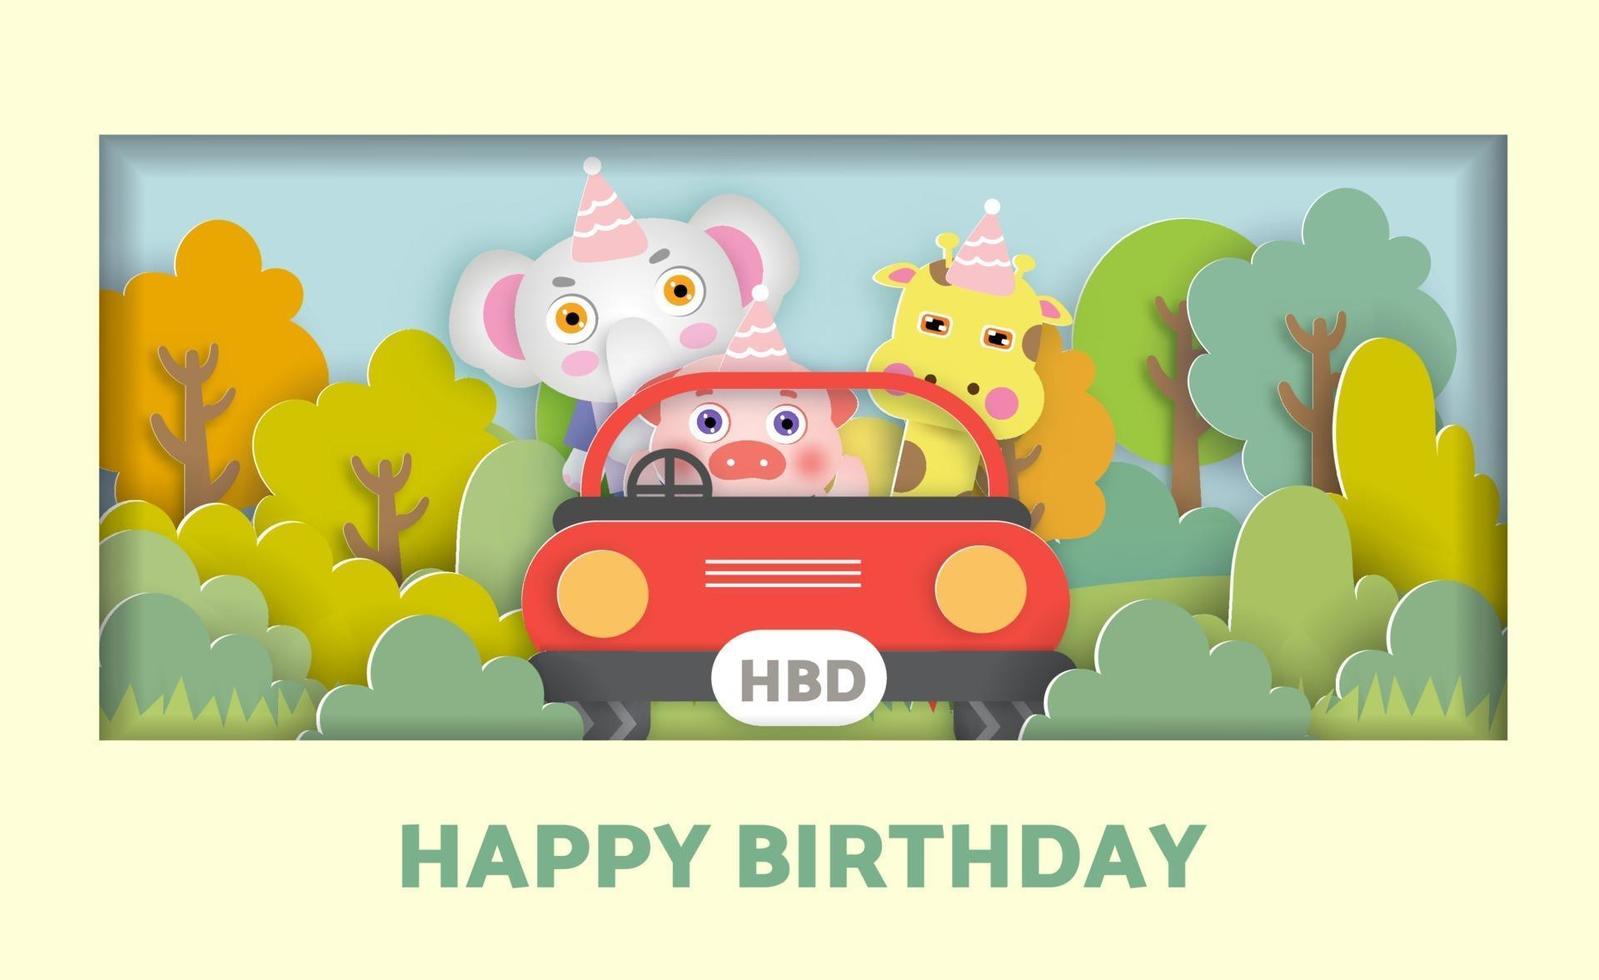 biglietto di auguri di compleanno con simpatici animali che si trovano in una macchina nella foresta vettore